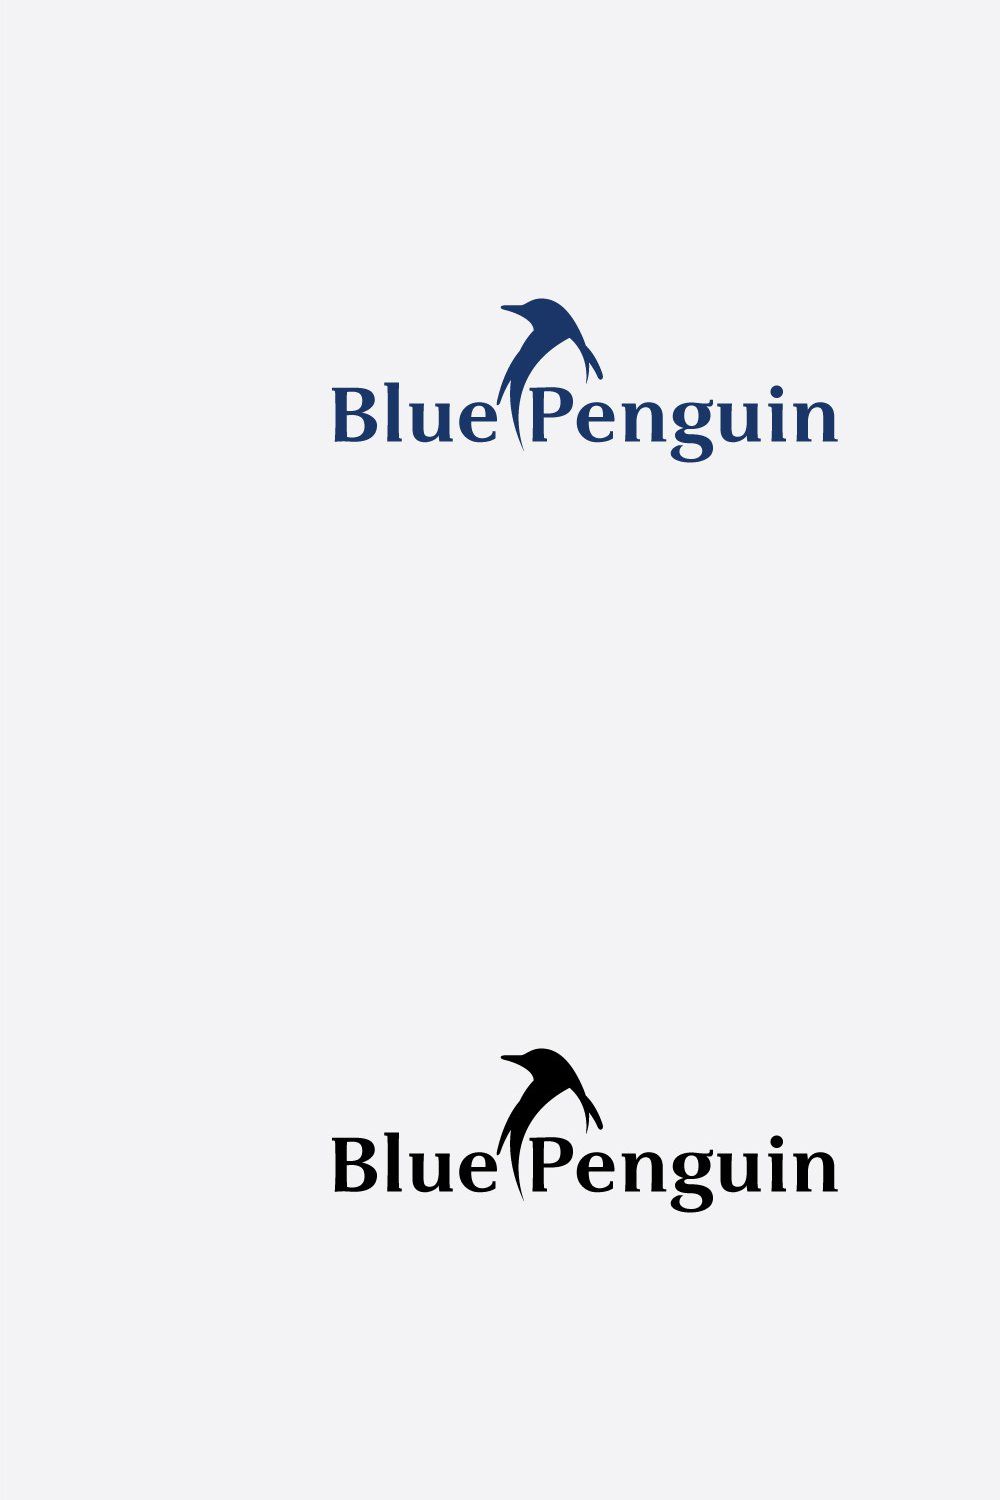 Blue Penguin pinterest preview image.